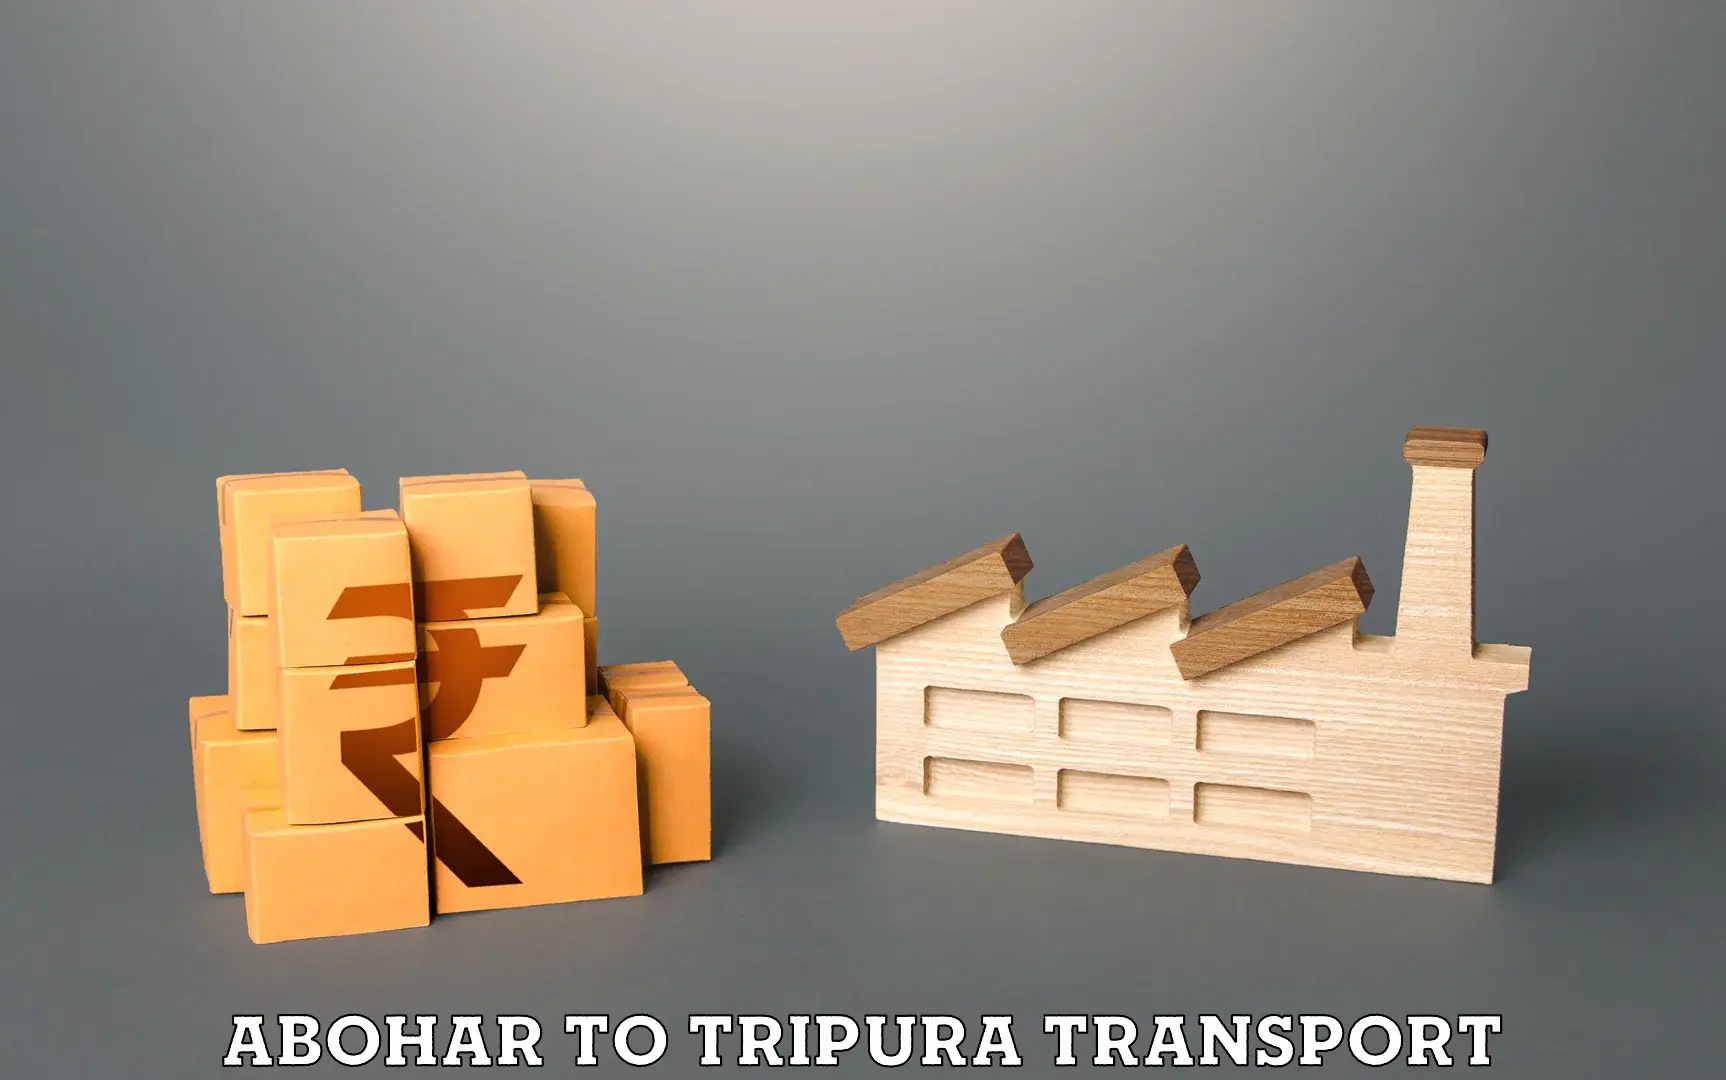 Furniture transport service Abohar to Dhalai